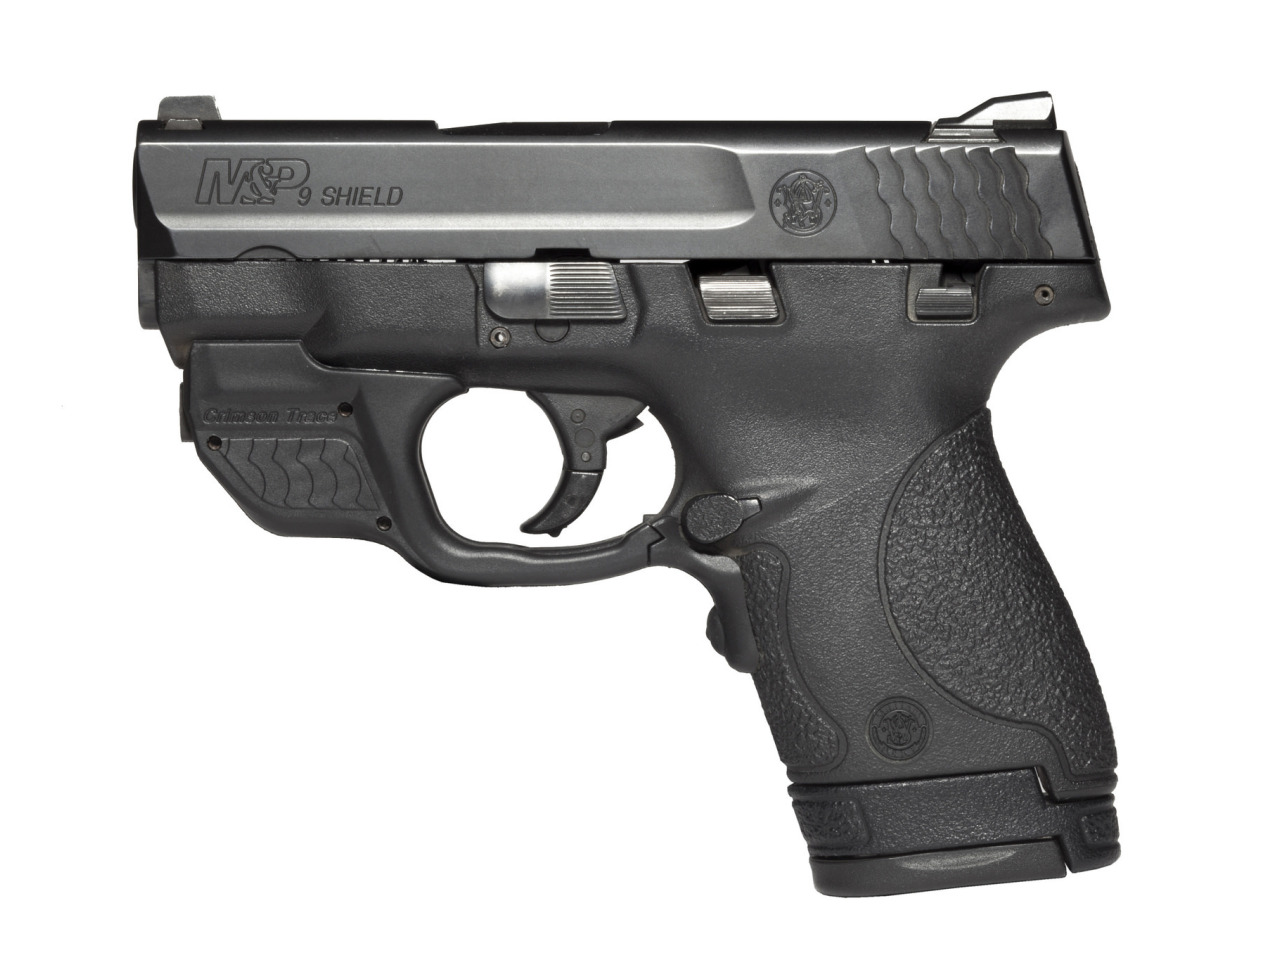 Smith & Wesson m&p overhauled by ed Brown. 9mm обои. 9mm обои ФОНК. Nine shield